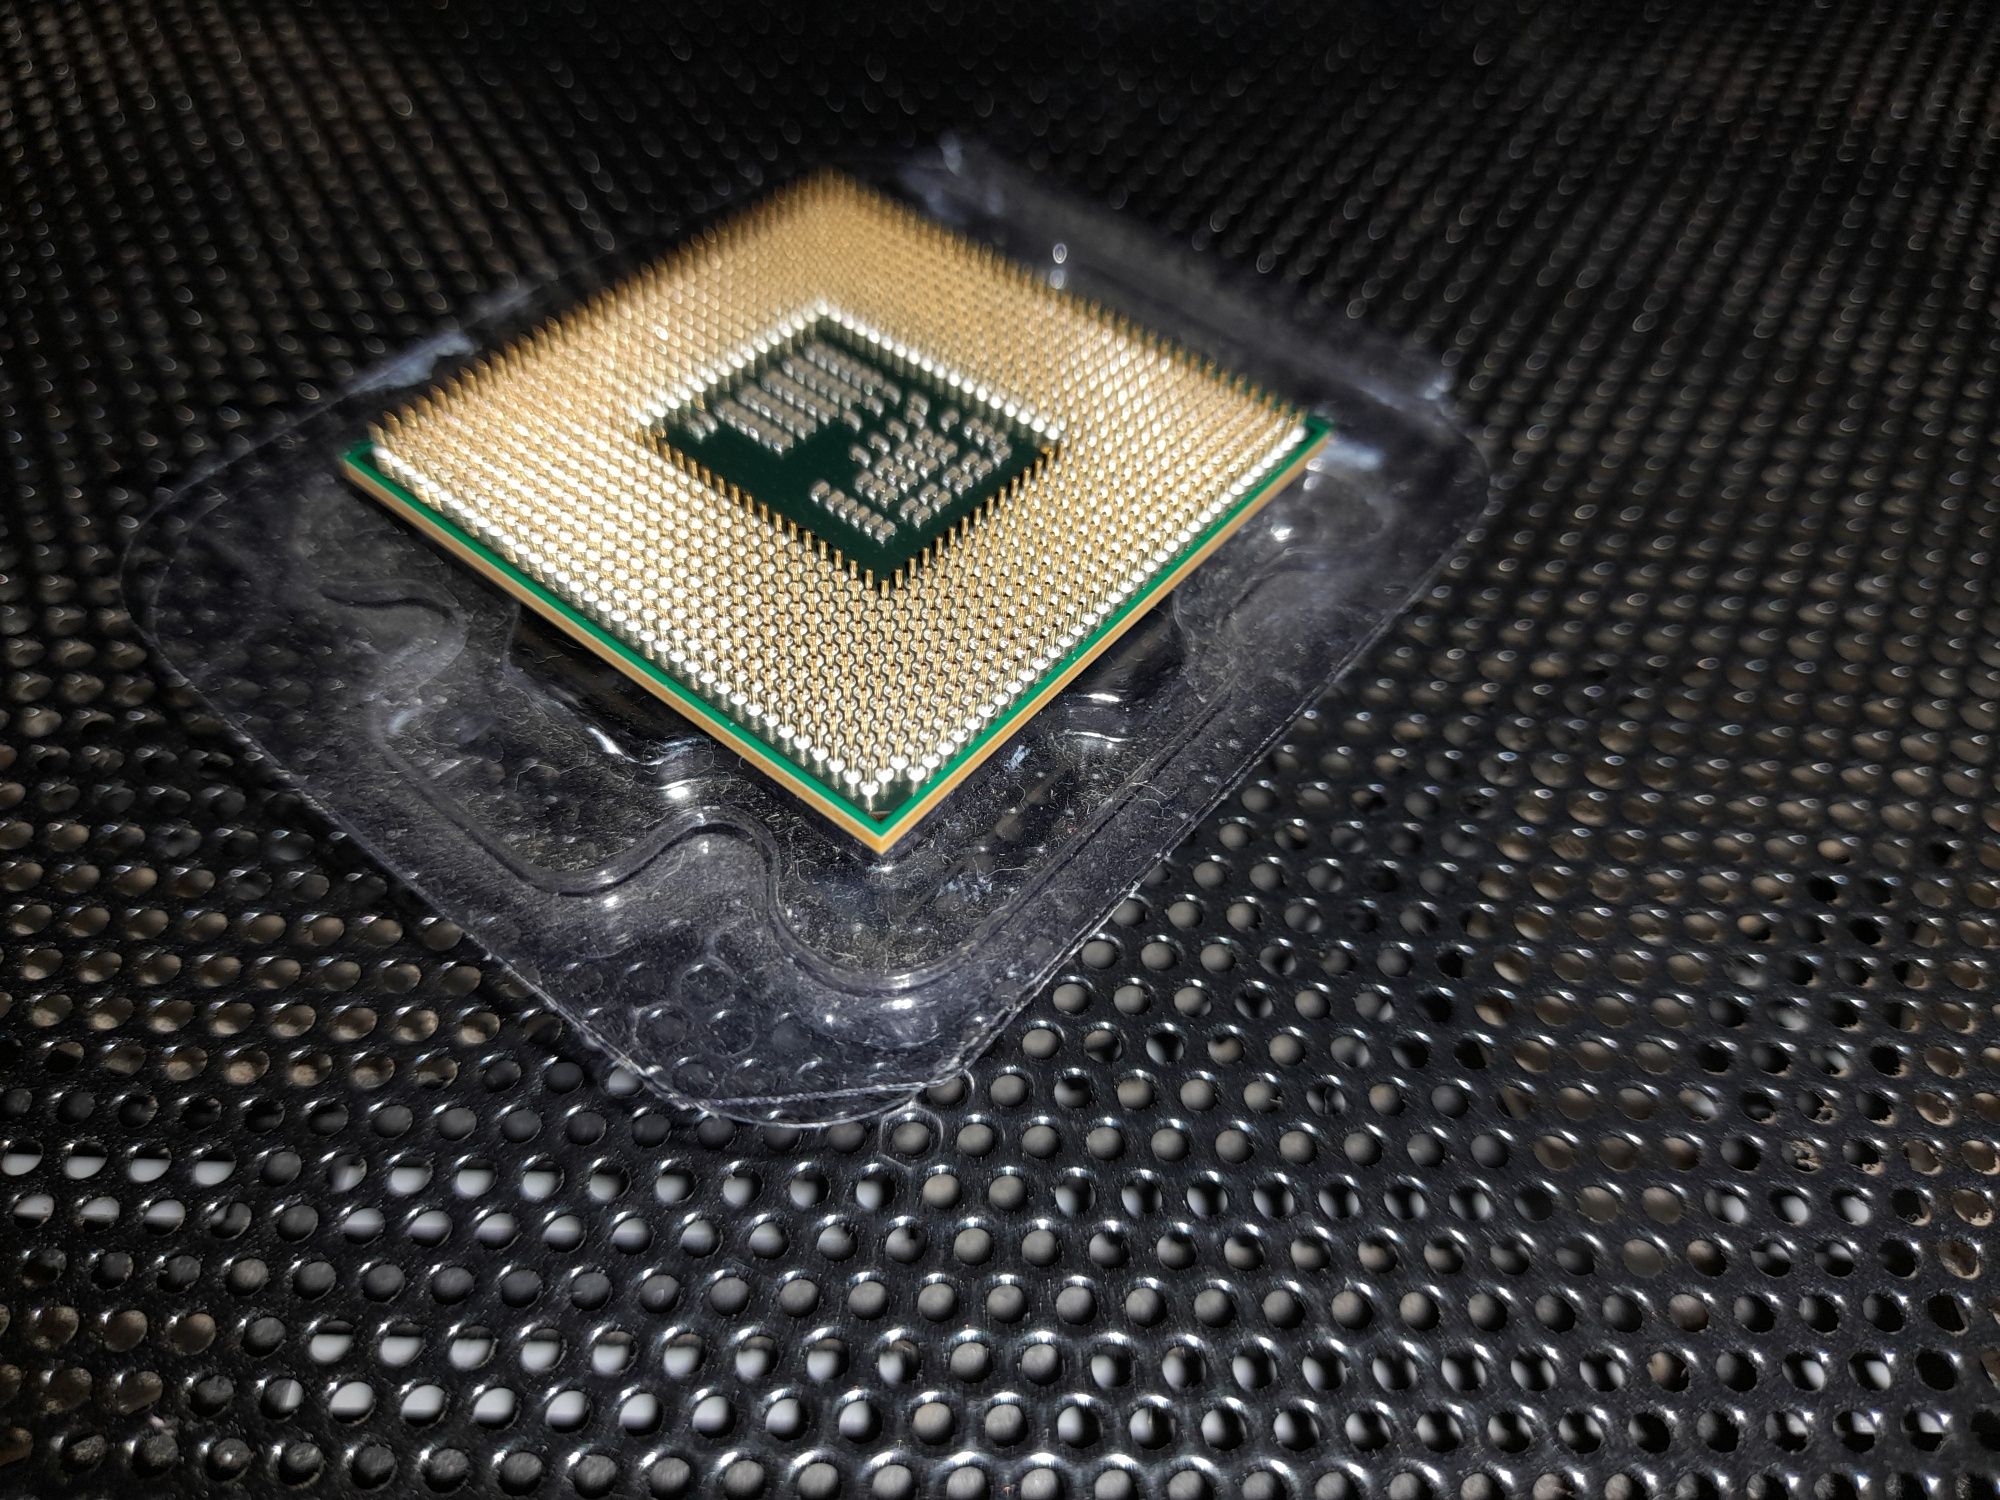 CPU intel P6100 Dual-core 2.00 GHz